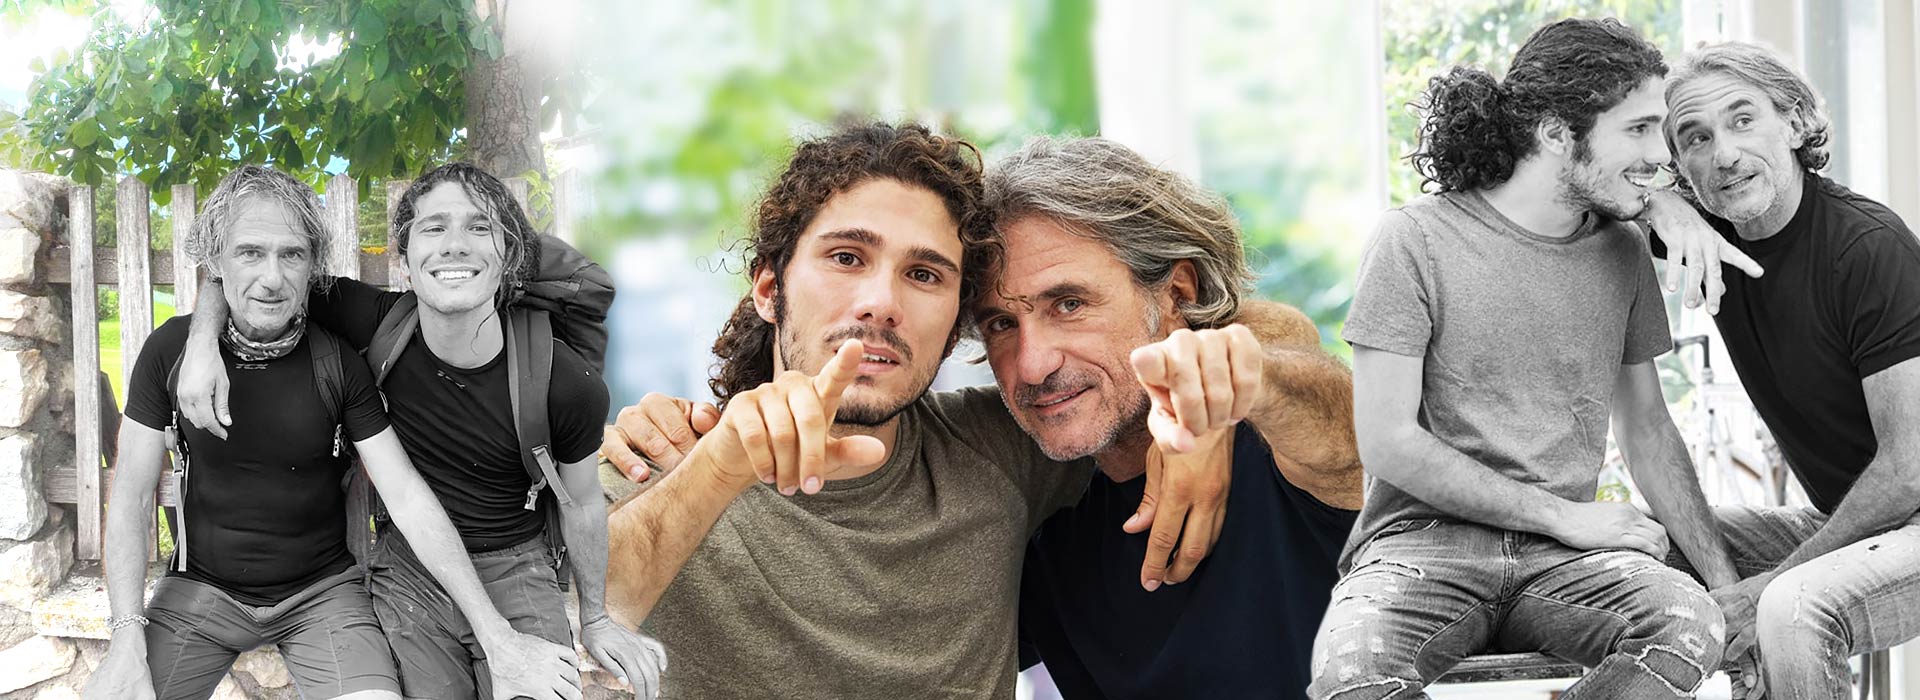 Franco Antonello, 60 anni e suo figlio Andrea, 27 anni